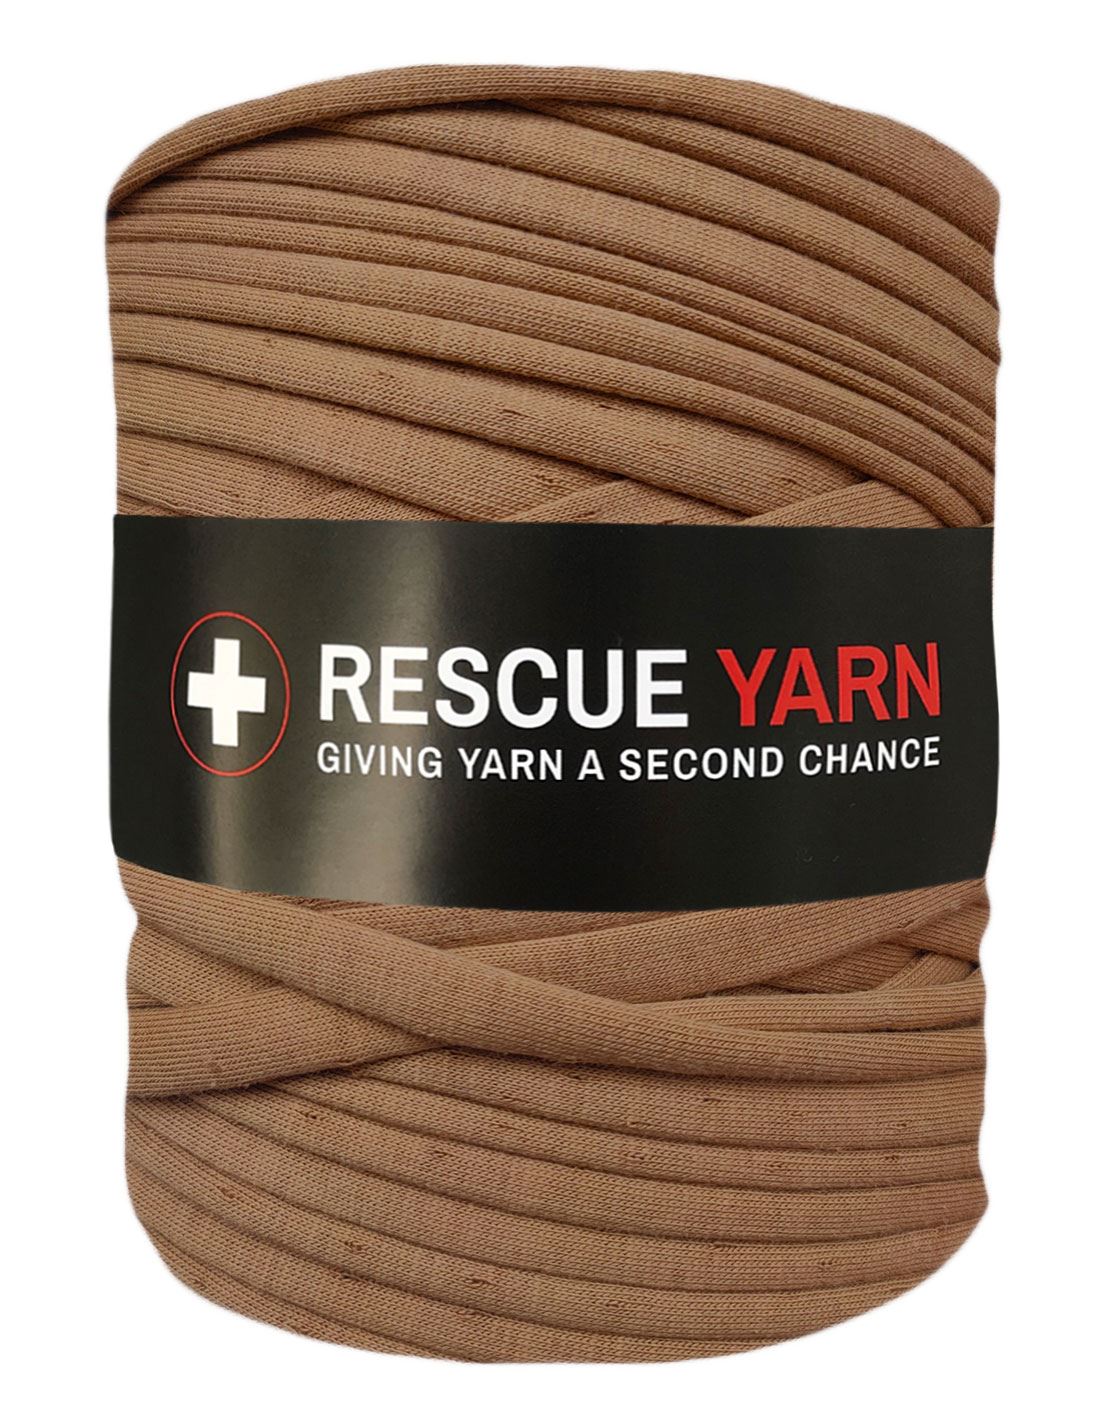 Fawn beige t-shirt yarn by Rescue Yarn (100-120m)